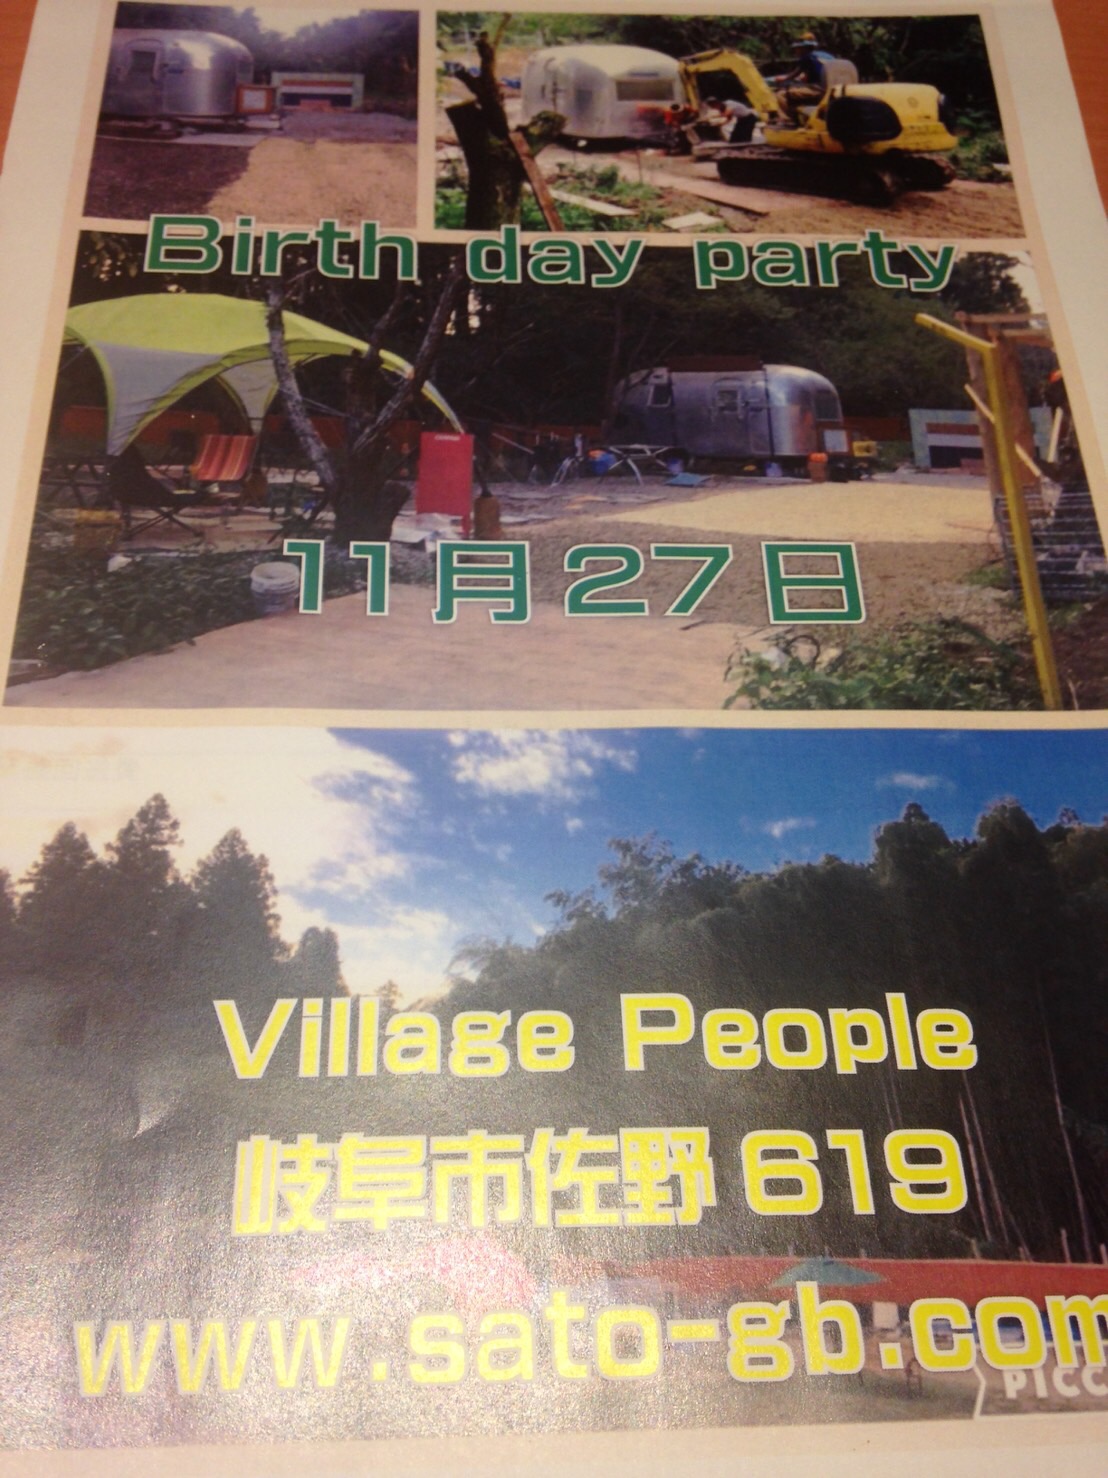 Villagepeople birthdayParty